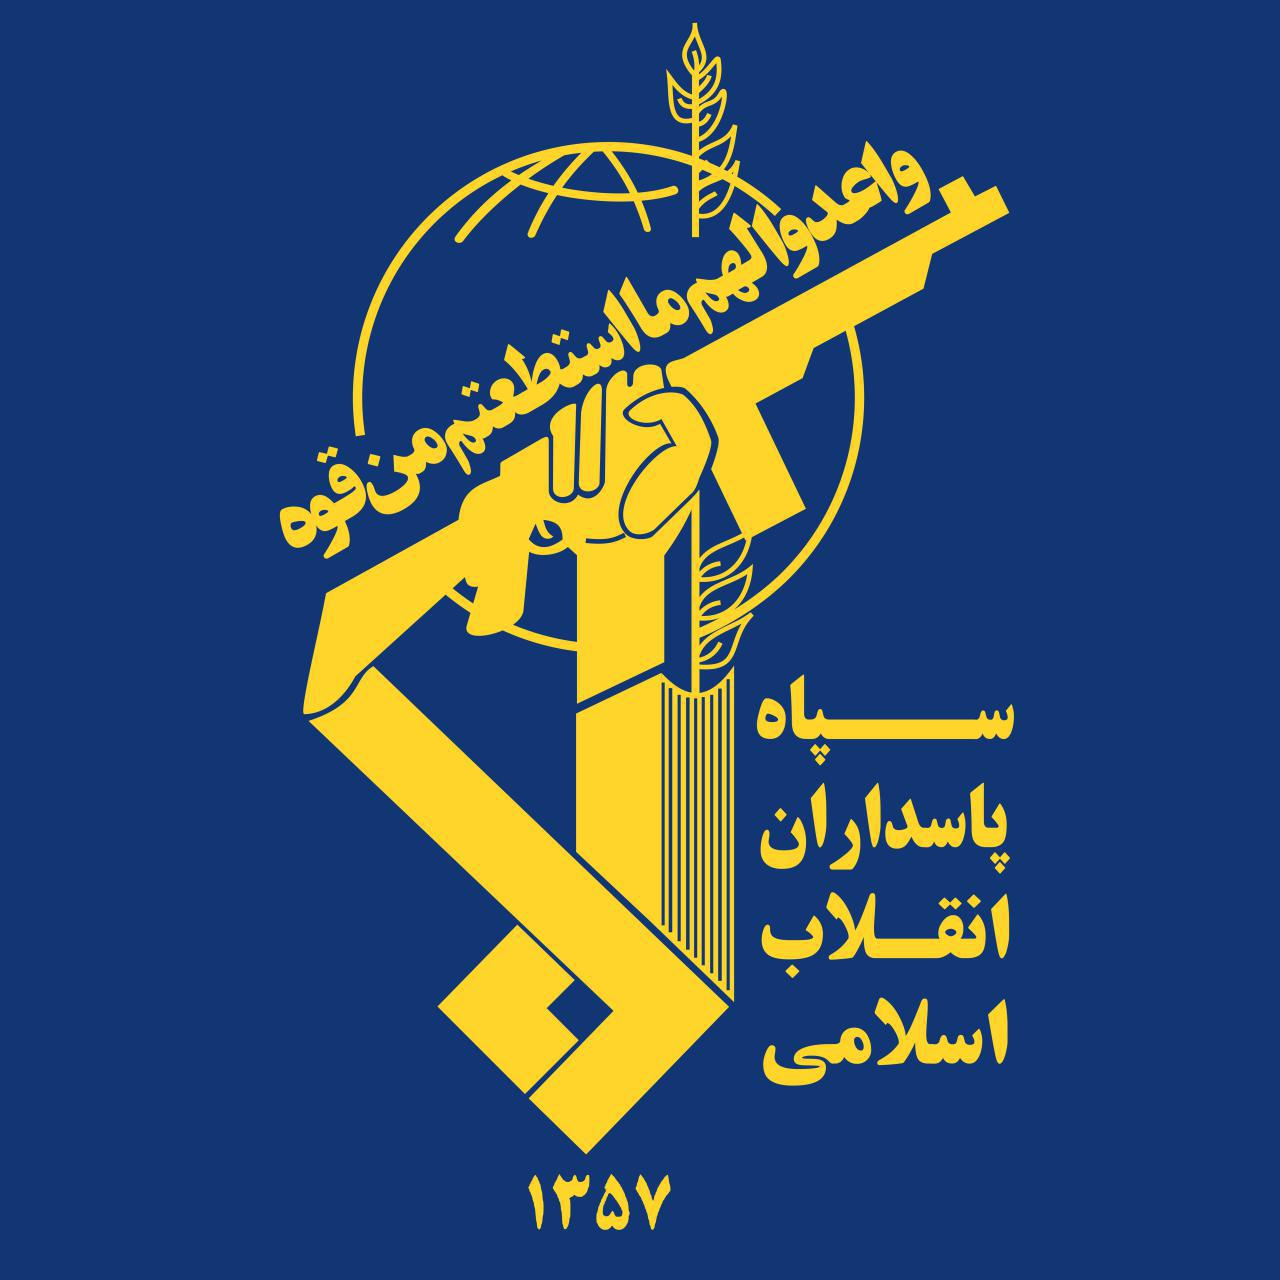 مروری بر مهمترین تحولات و رویدادهای نیروهای مسلح ایران در سال ۱۳۹۸